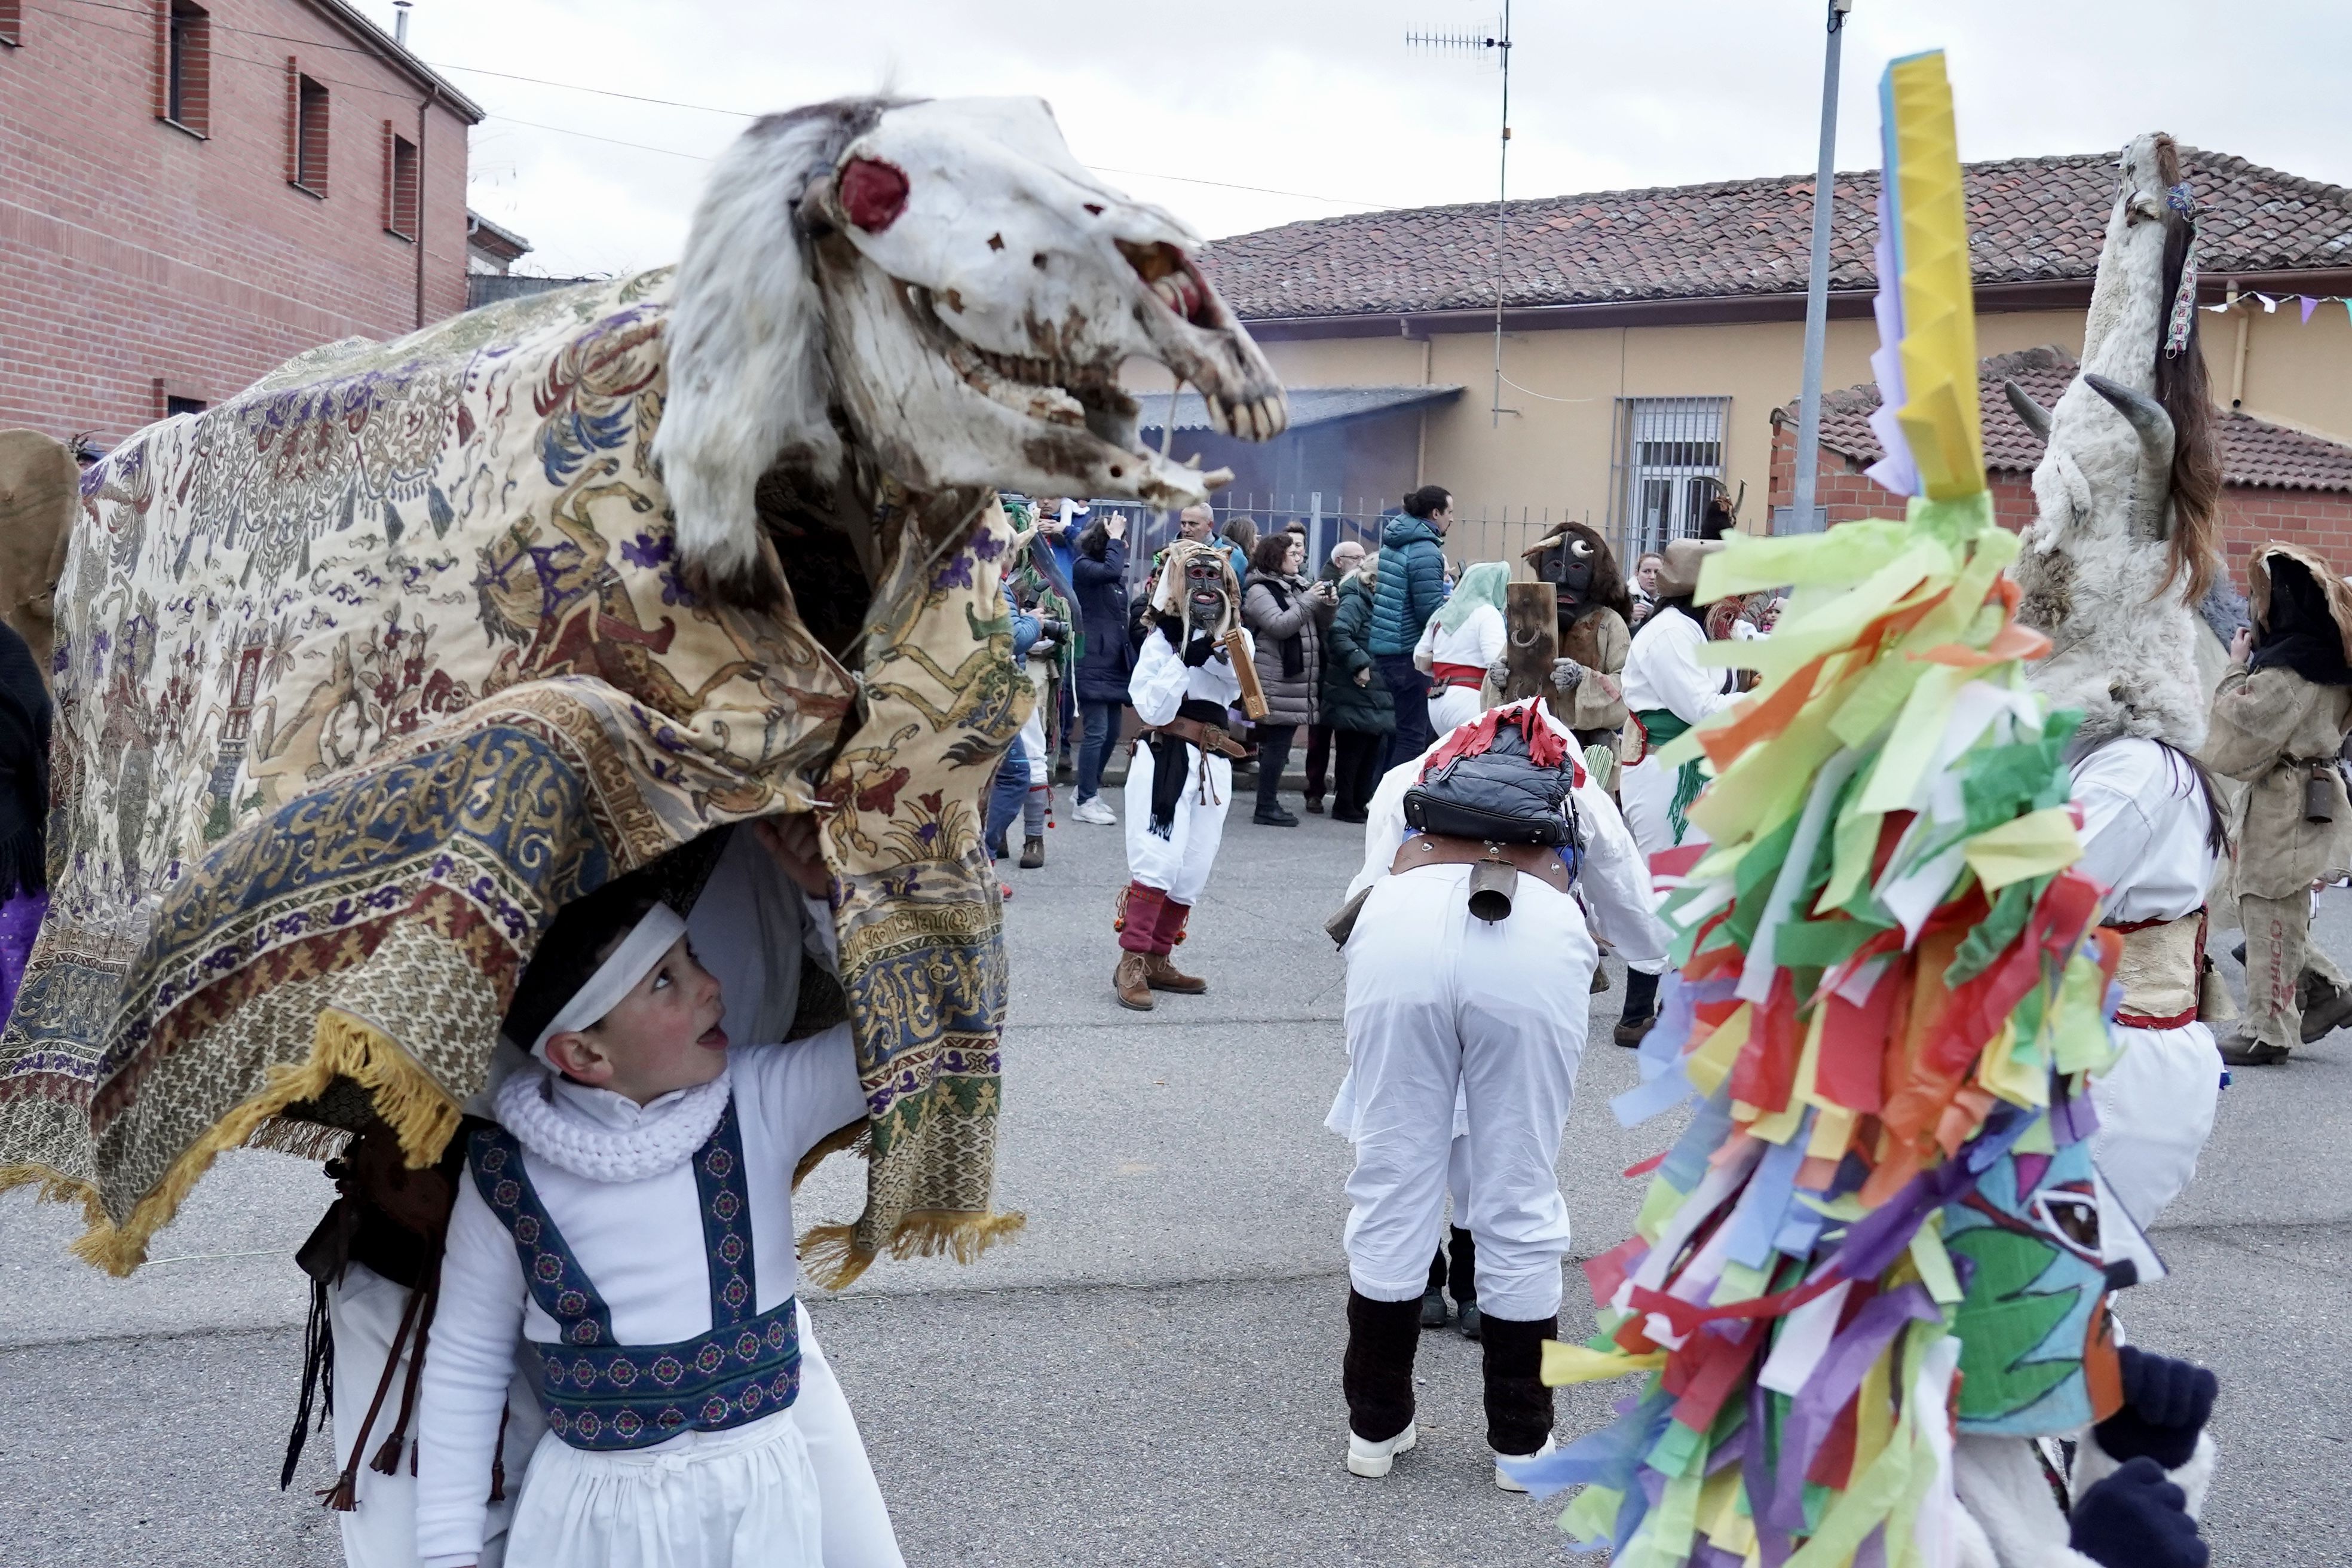  La localidad leonesa de Velilla de la Reina celebra su antruejo con una cencerrada y exhibición de toros y guirrios. | Campillo (Ical)